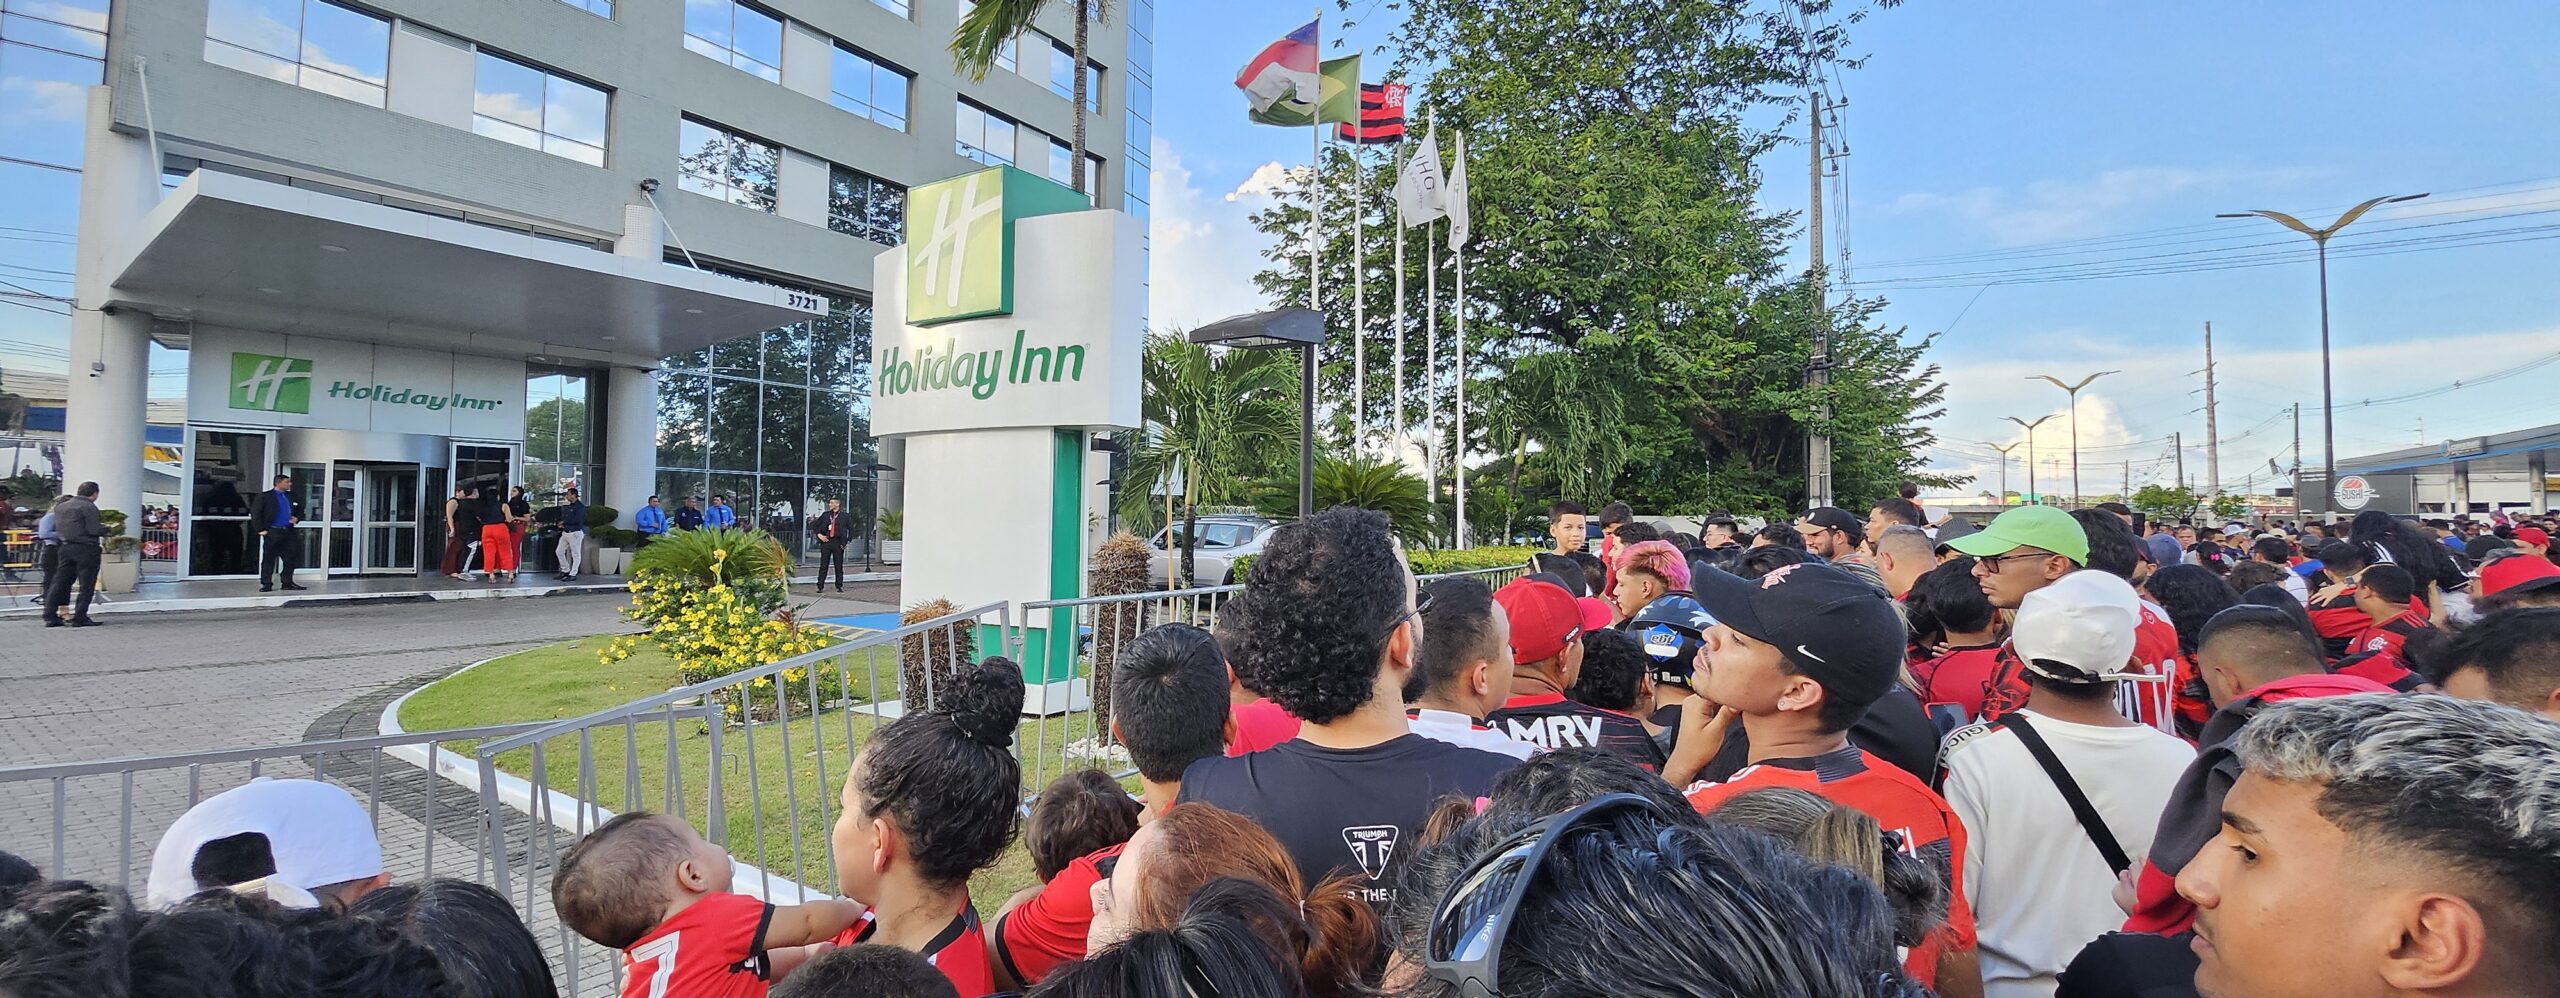 Flamengo Enfrenta o Audax em Manaus com ingressos esgotados